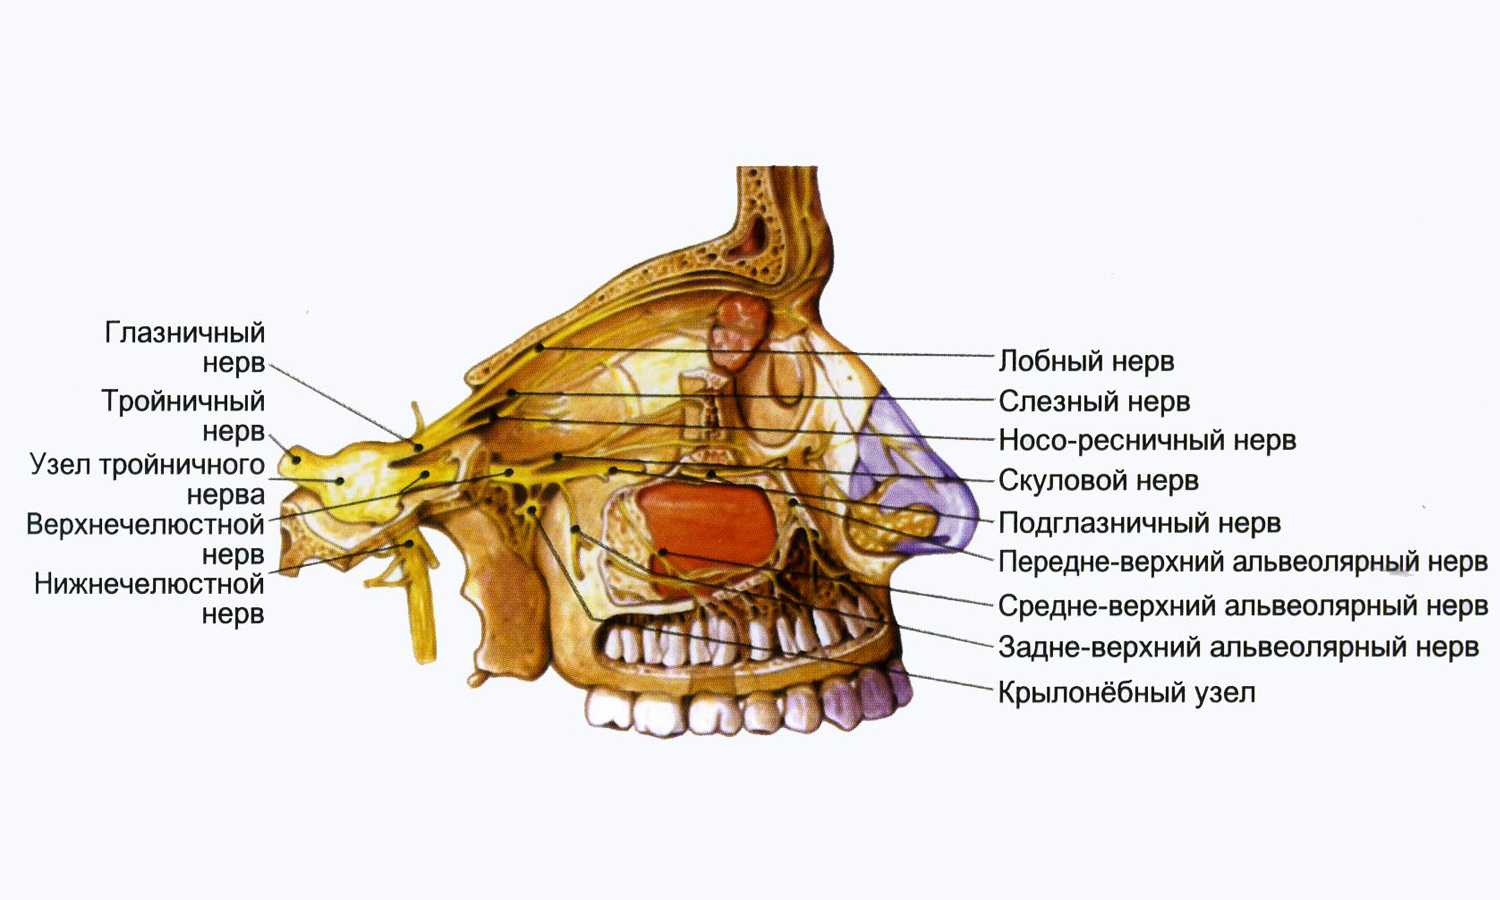 Лицевой нерв челюсти. Крылонебный узел тройничного нерва. Ветви тройничного нерва анатомия. Анатомия глазной ветви тройничного нерва. Лицевая ветвь тройничного нерва.